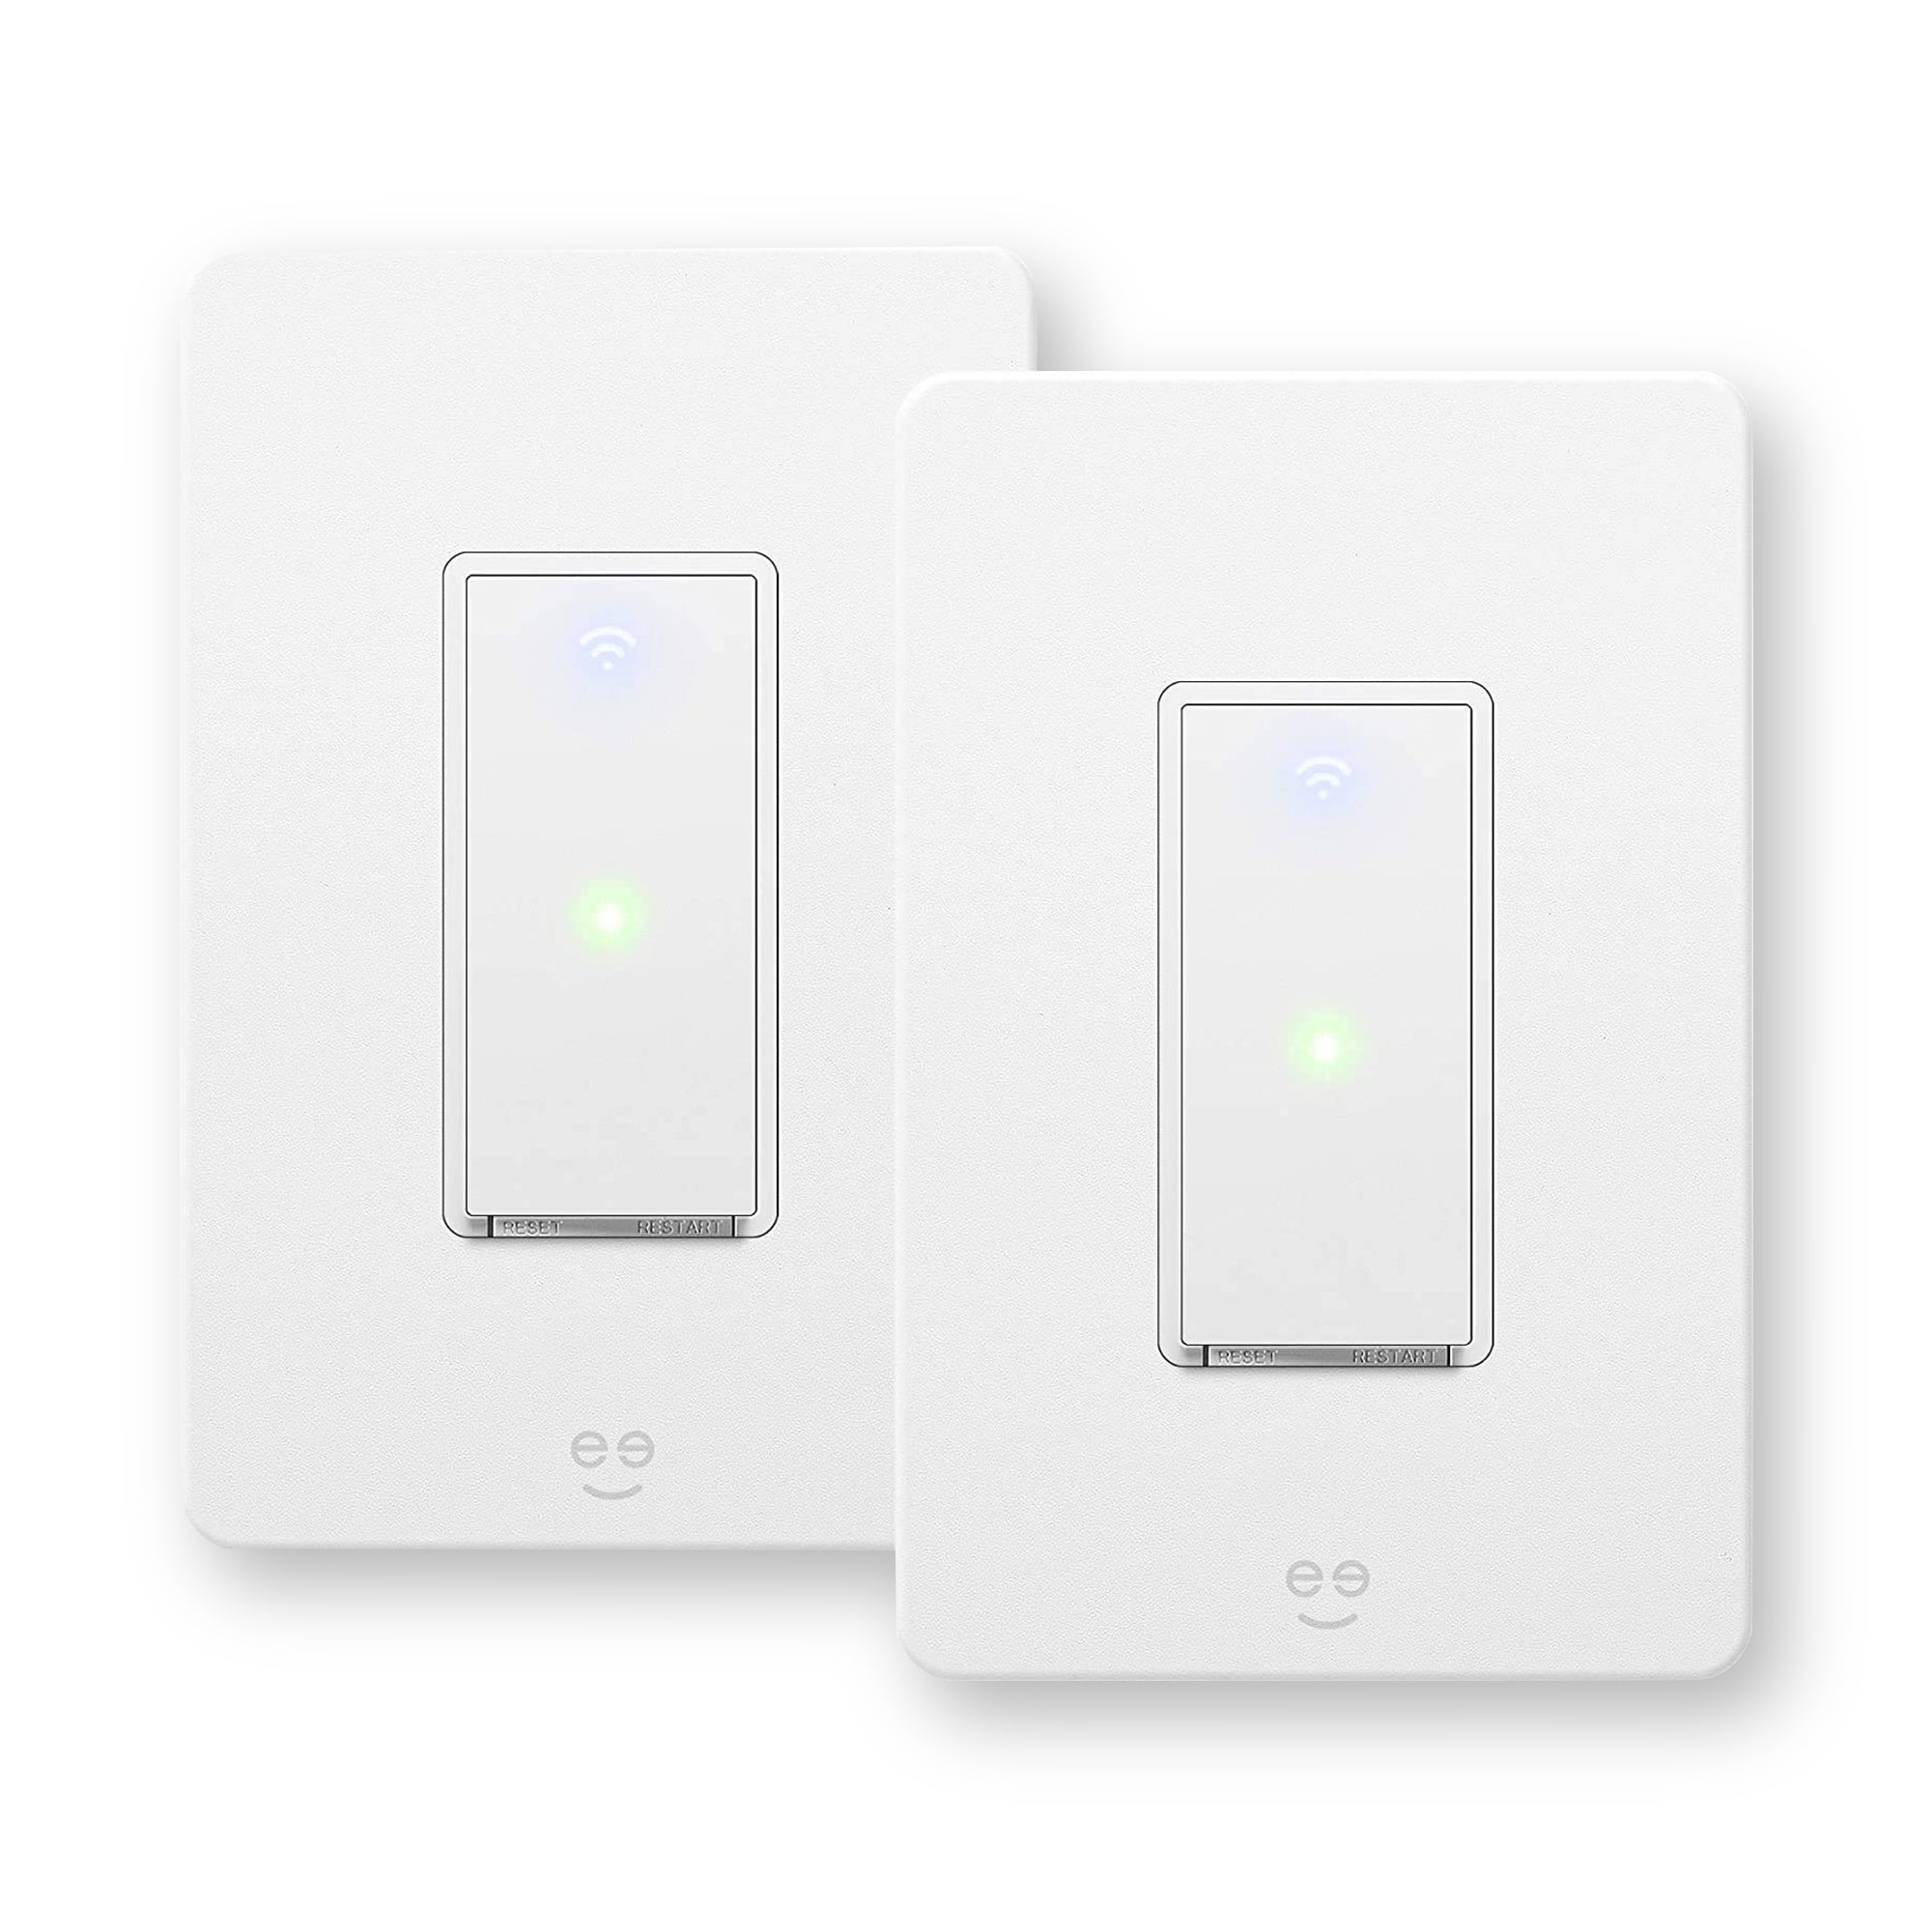 Geeni Tap 3-Way Light Switch Kit (2-Pack)